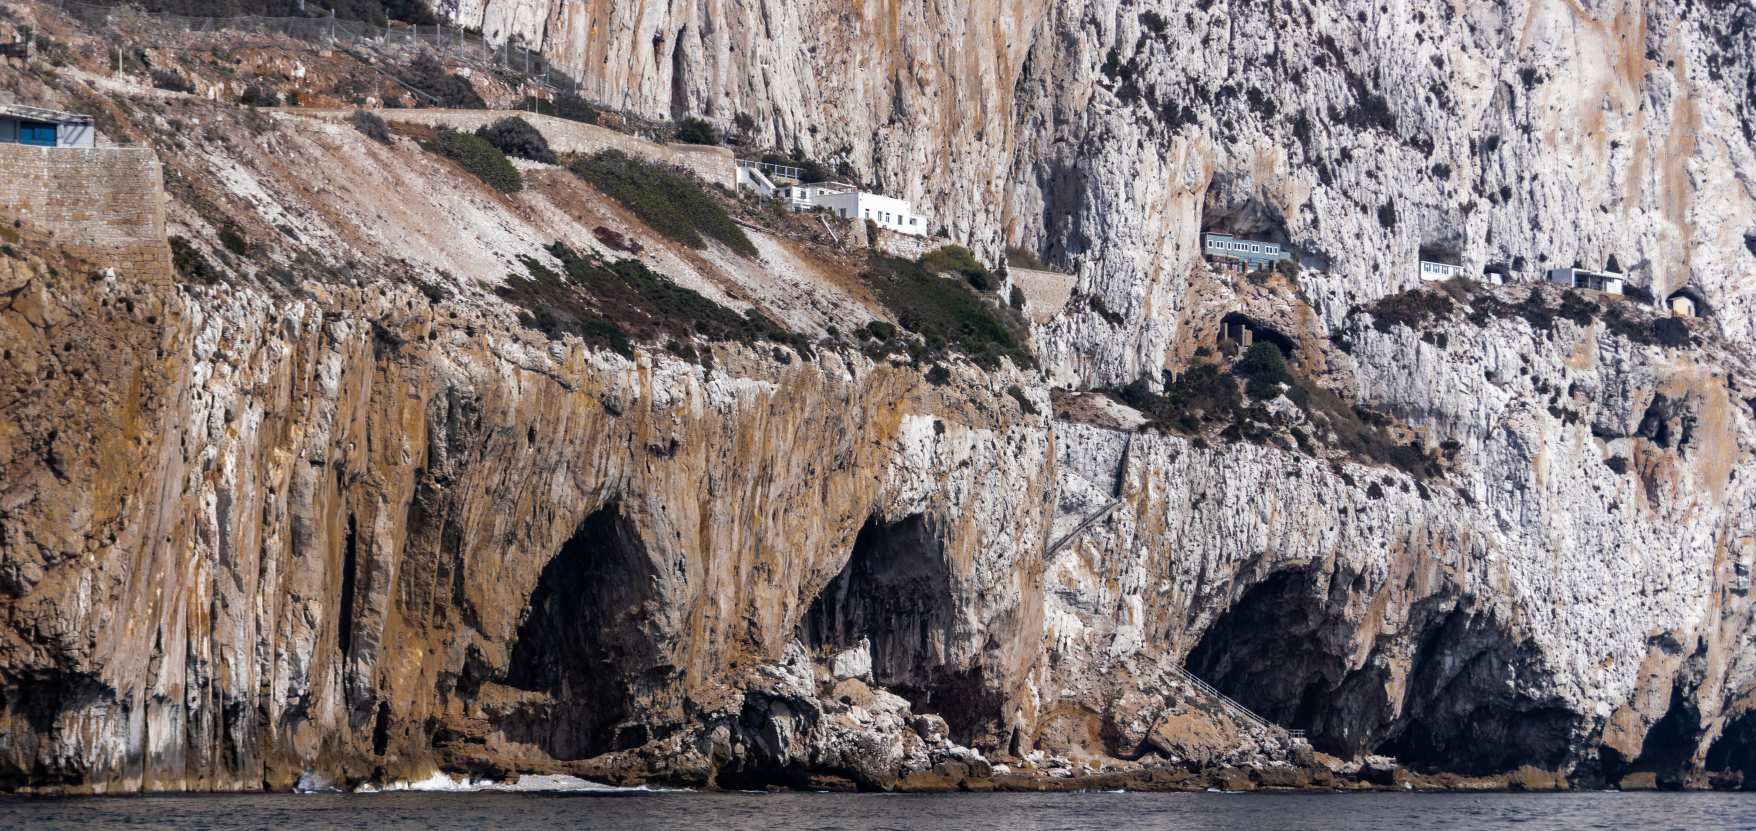 Пещерный комплекс Горхэма: наиболее убедительным доказательством того, что эта часть пещеры использовалась неандтеральцами, является раковина большого моллюска, съедобного вида морской улитки. © Изображение предоставлено: Алан Кларк/Shutterstock